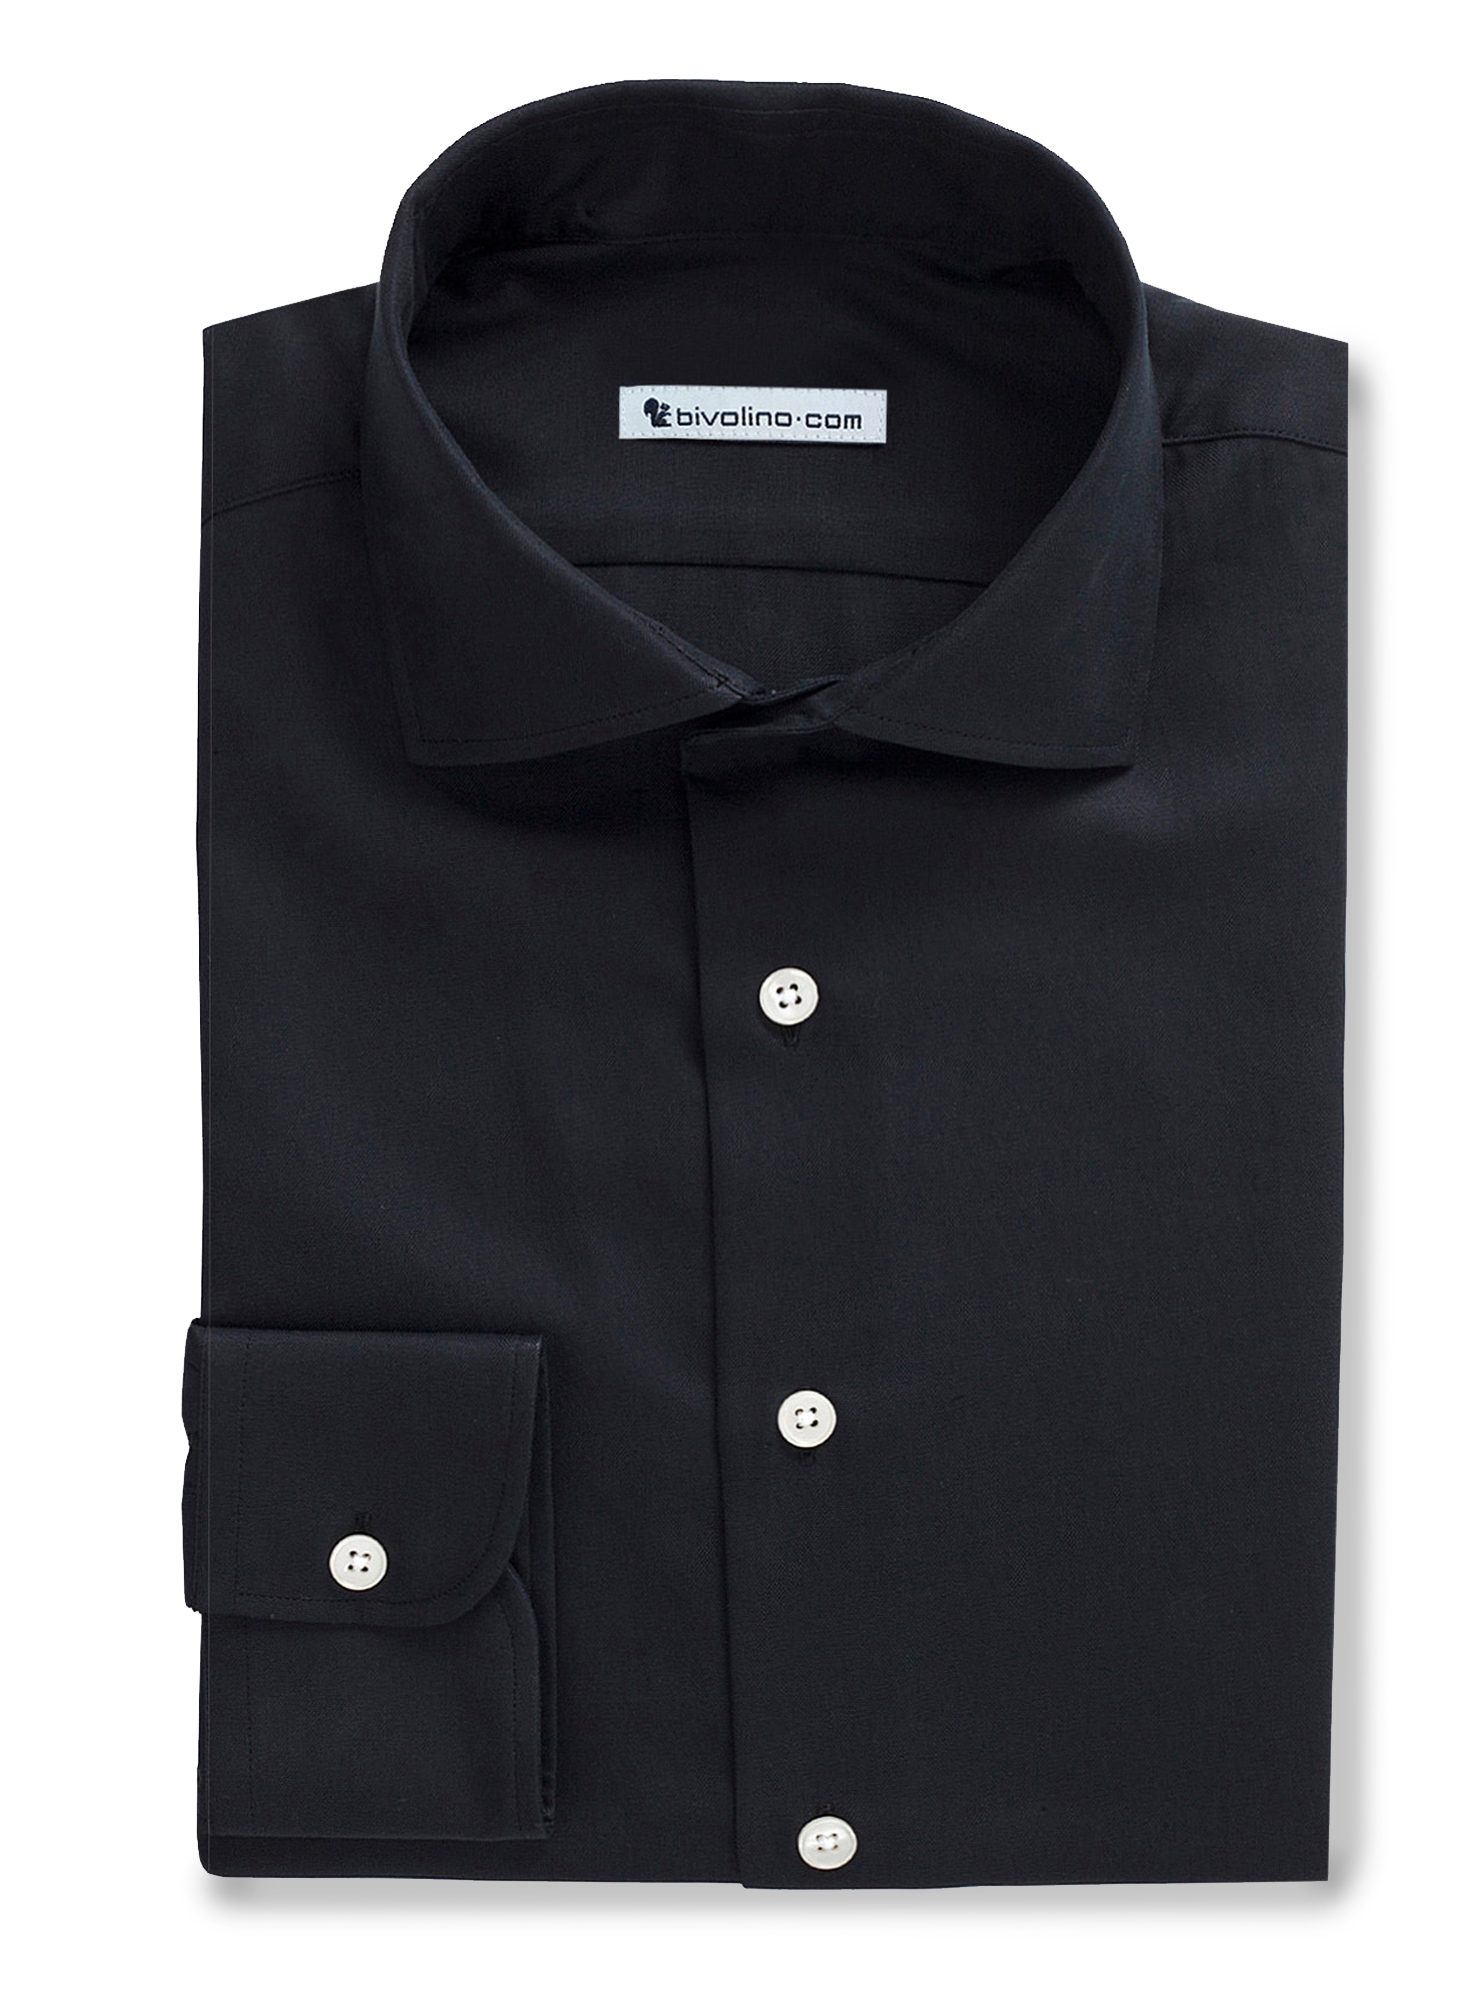 BLACKI - Camisa negra para hombre - Opal 6-Shrewsbury